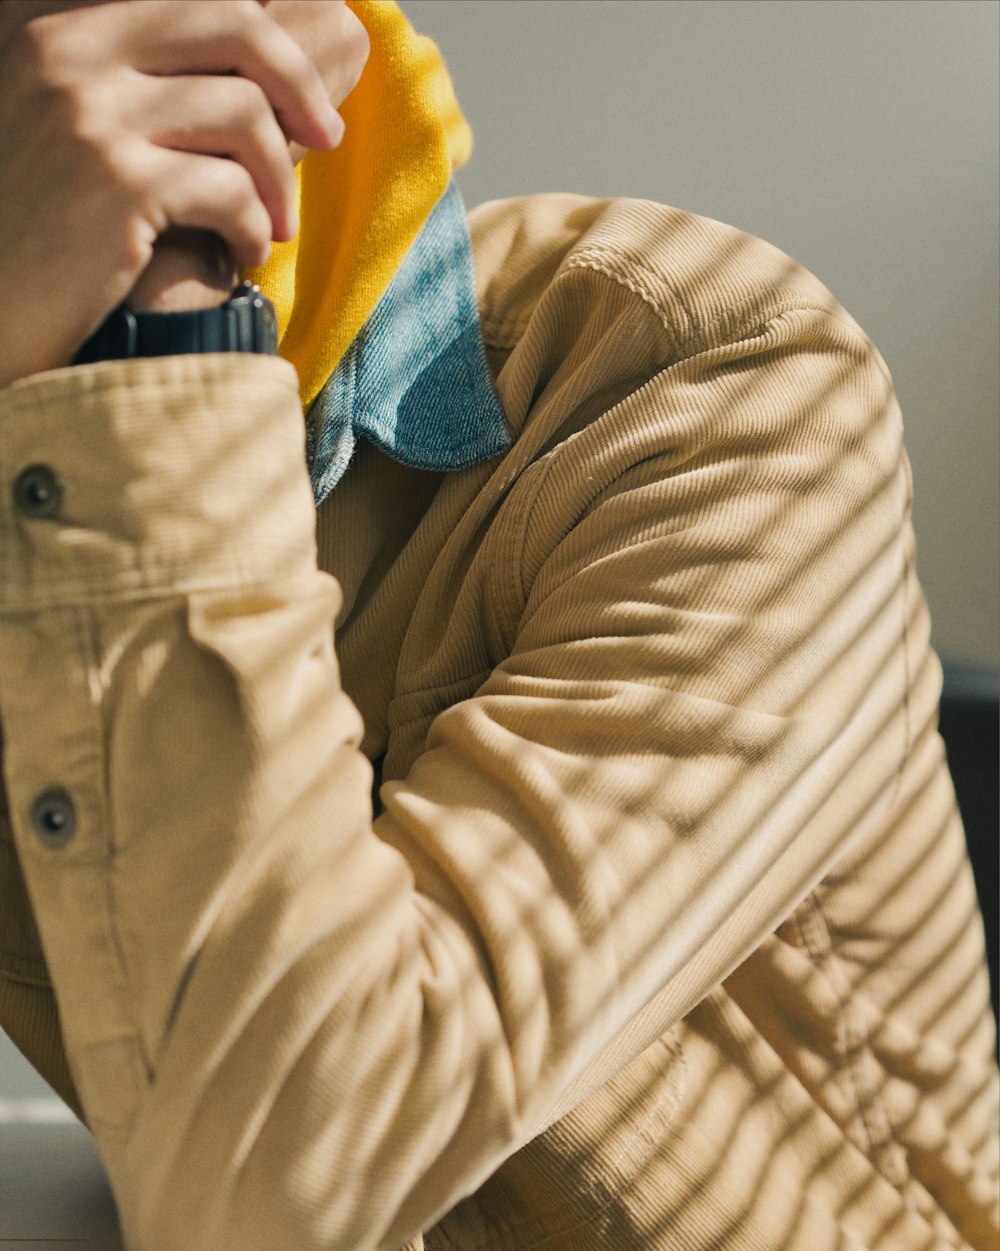 Persona in giacca marrone che indossa un berretto a maglia blu e giallo